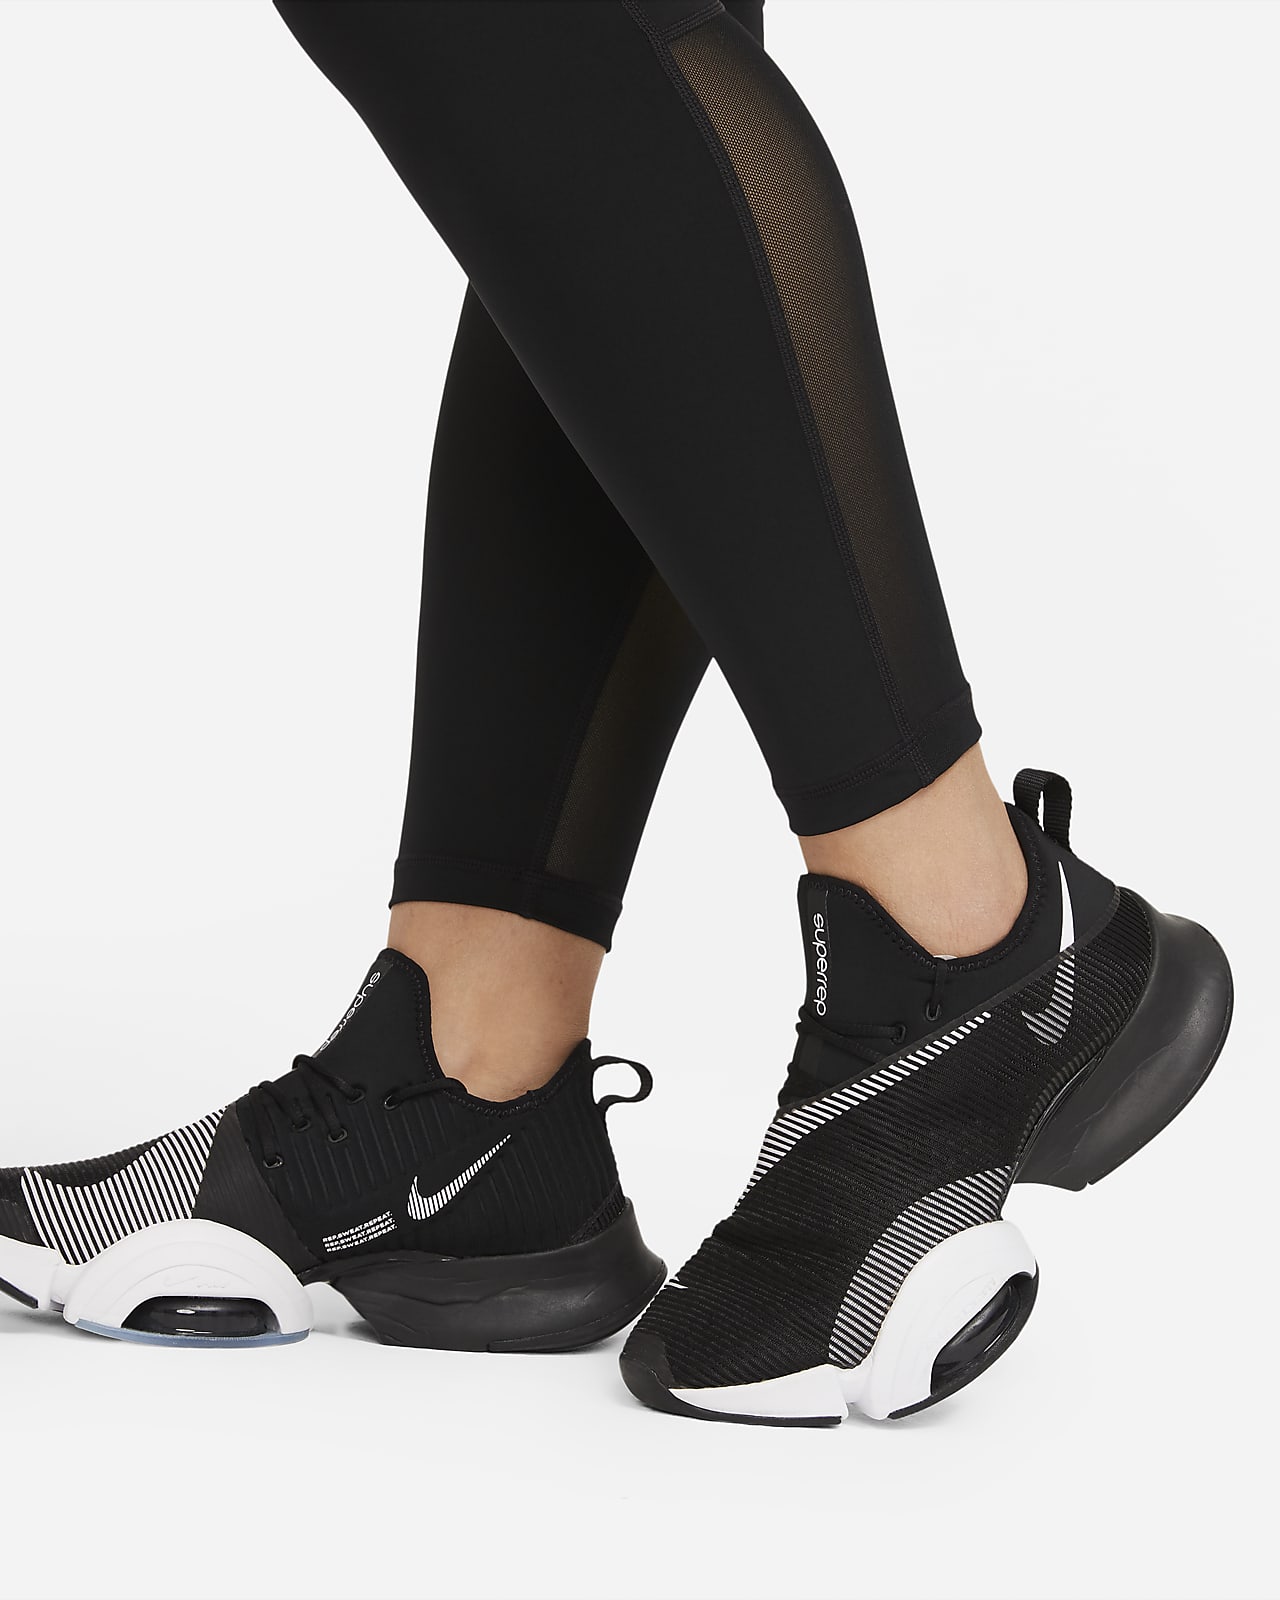 Buy Nike Women's Pro 365 Leggings (Plus Size) Grey in KSA -SSS